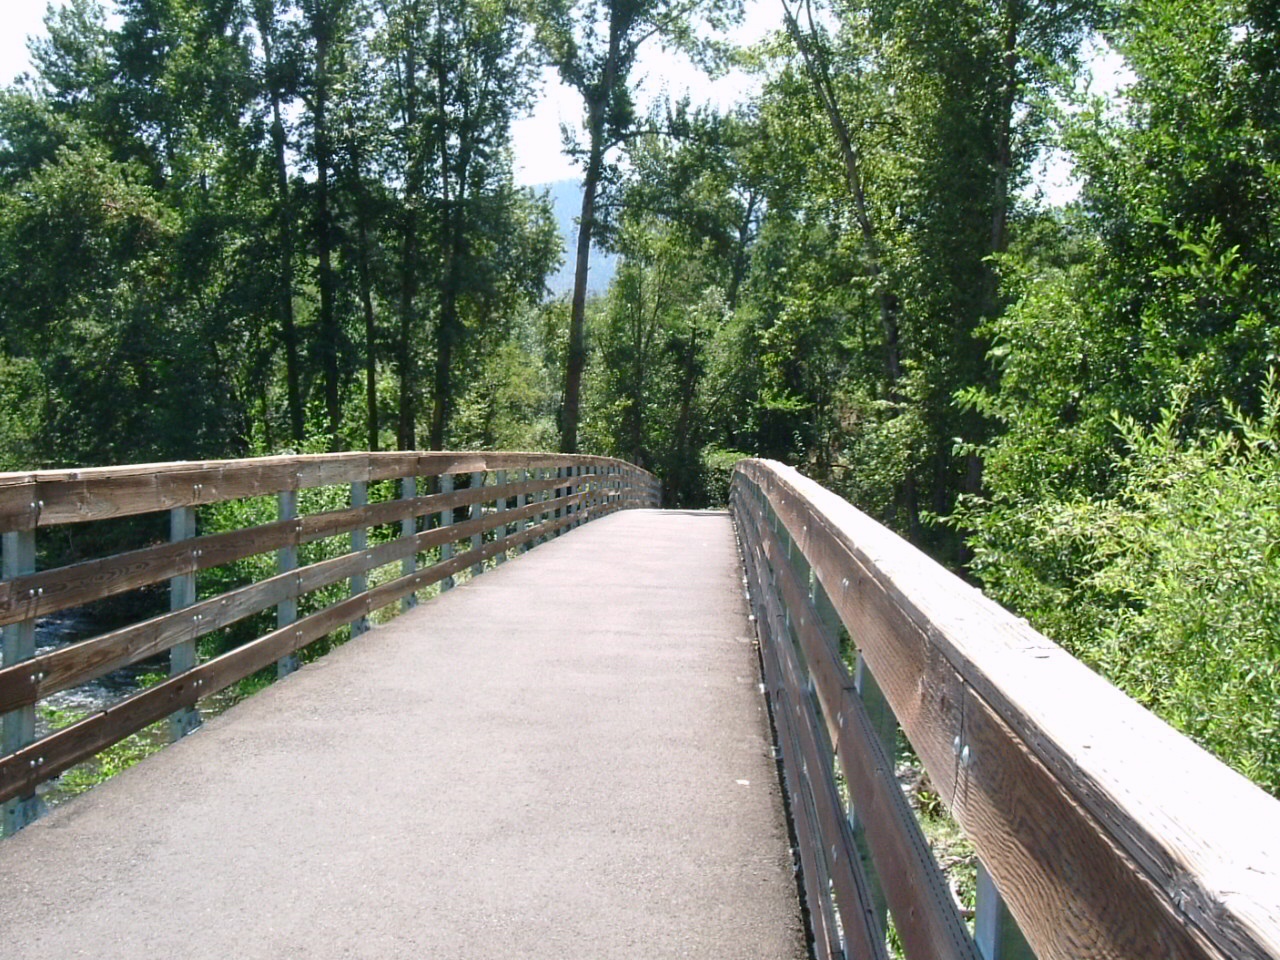 Bear Creek Greenway